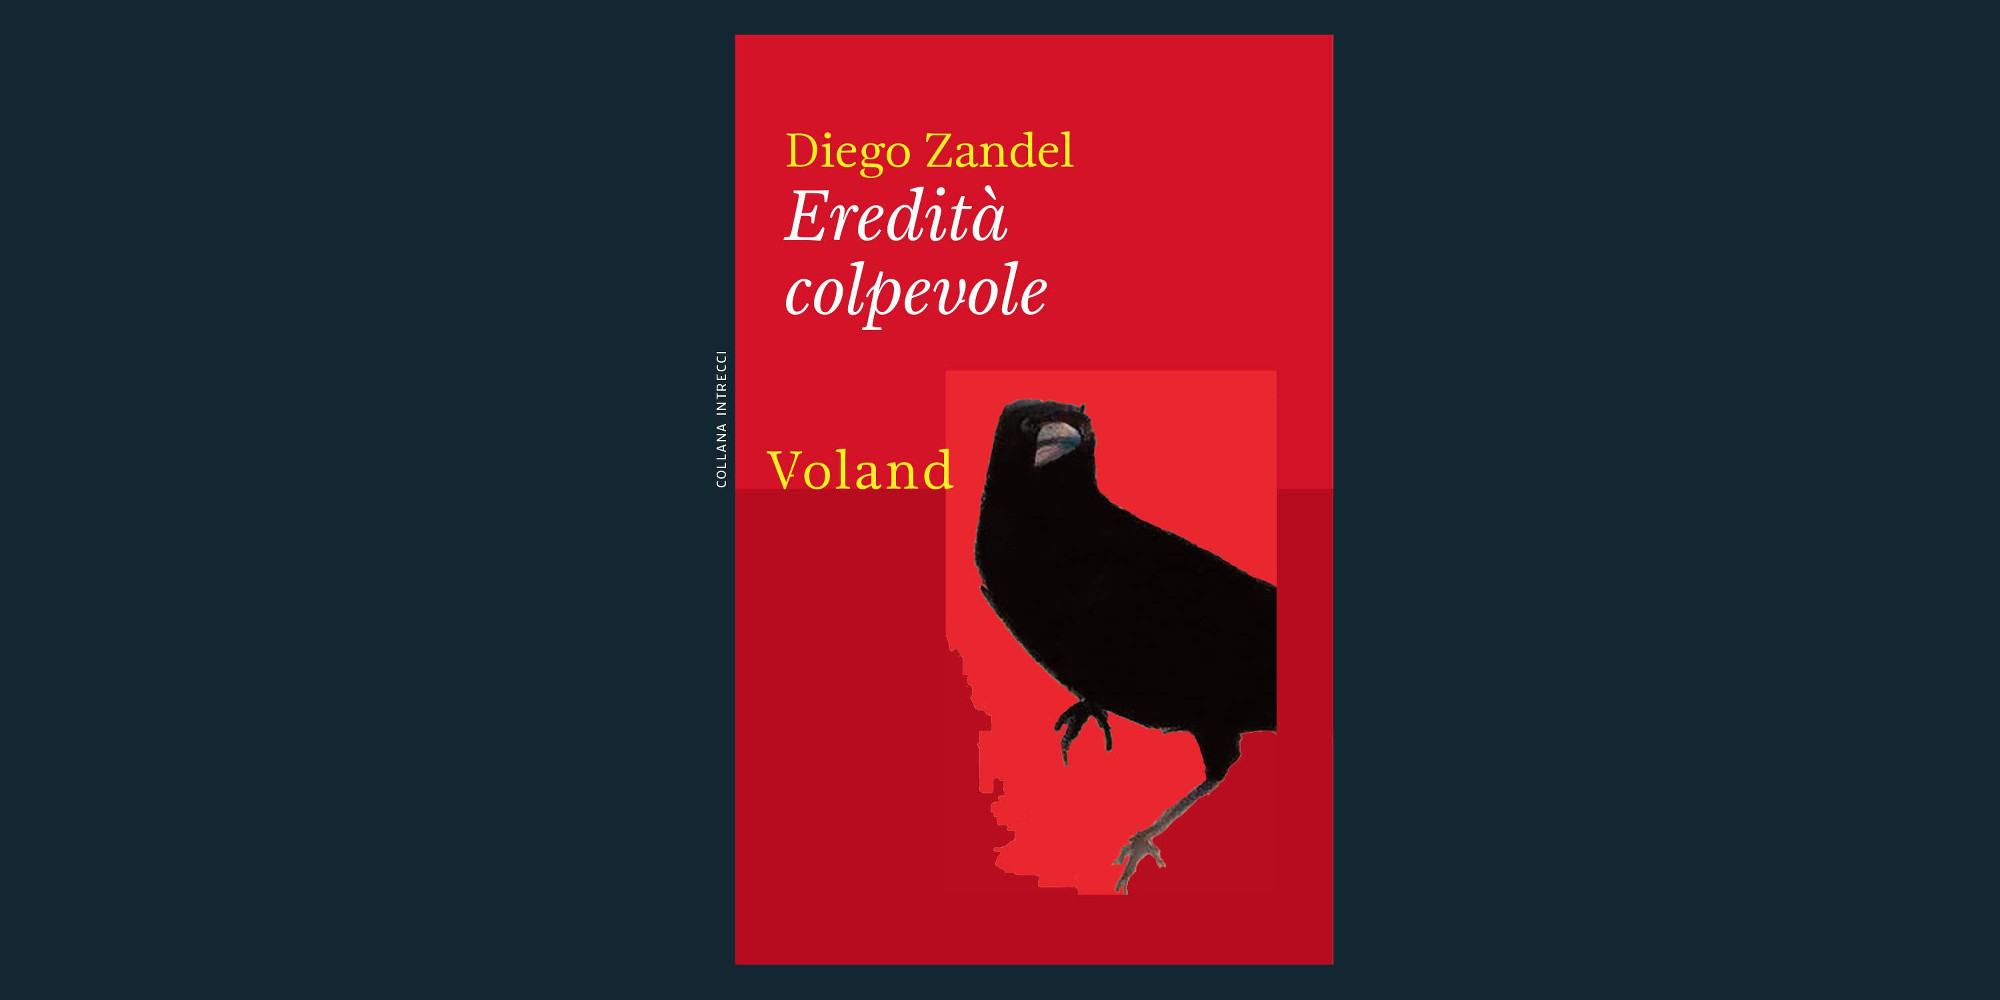 Eredità colpevole, la recensione di Pierluigi Porazzi del romanzo pubblicato da Diego Zandel per Voland Edizioni.